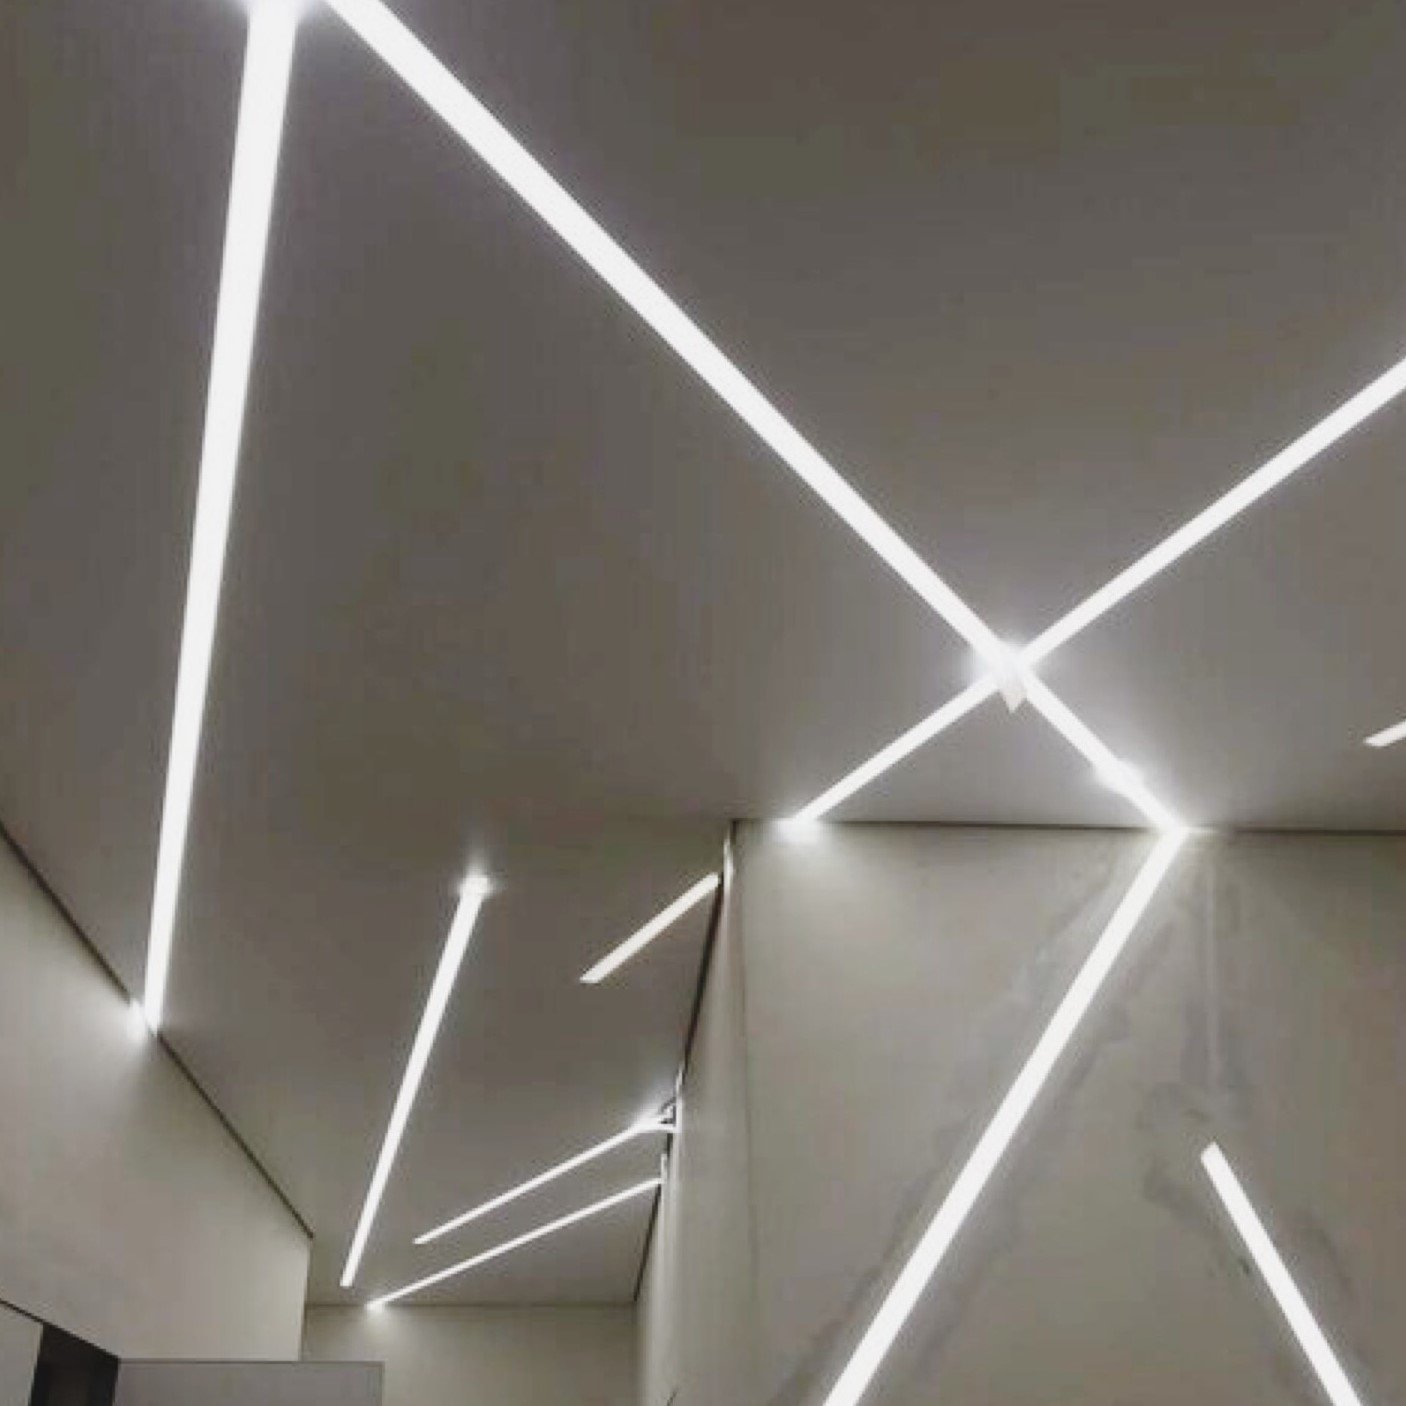 Свет от световых линий. ЦЕНТРСВЕТ профильные светильники. Световые линии на потолке. Световыединии на потолке. Световые линии на стене.